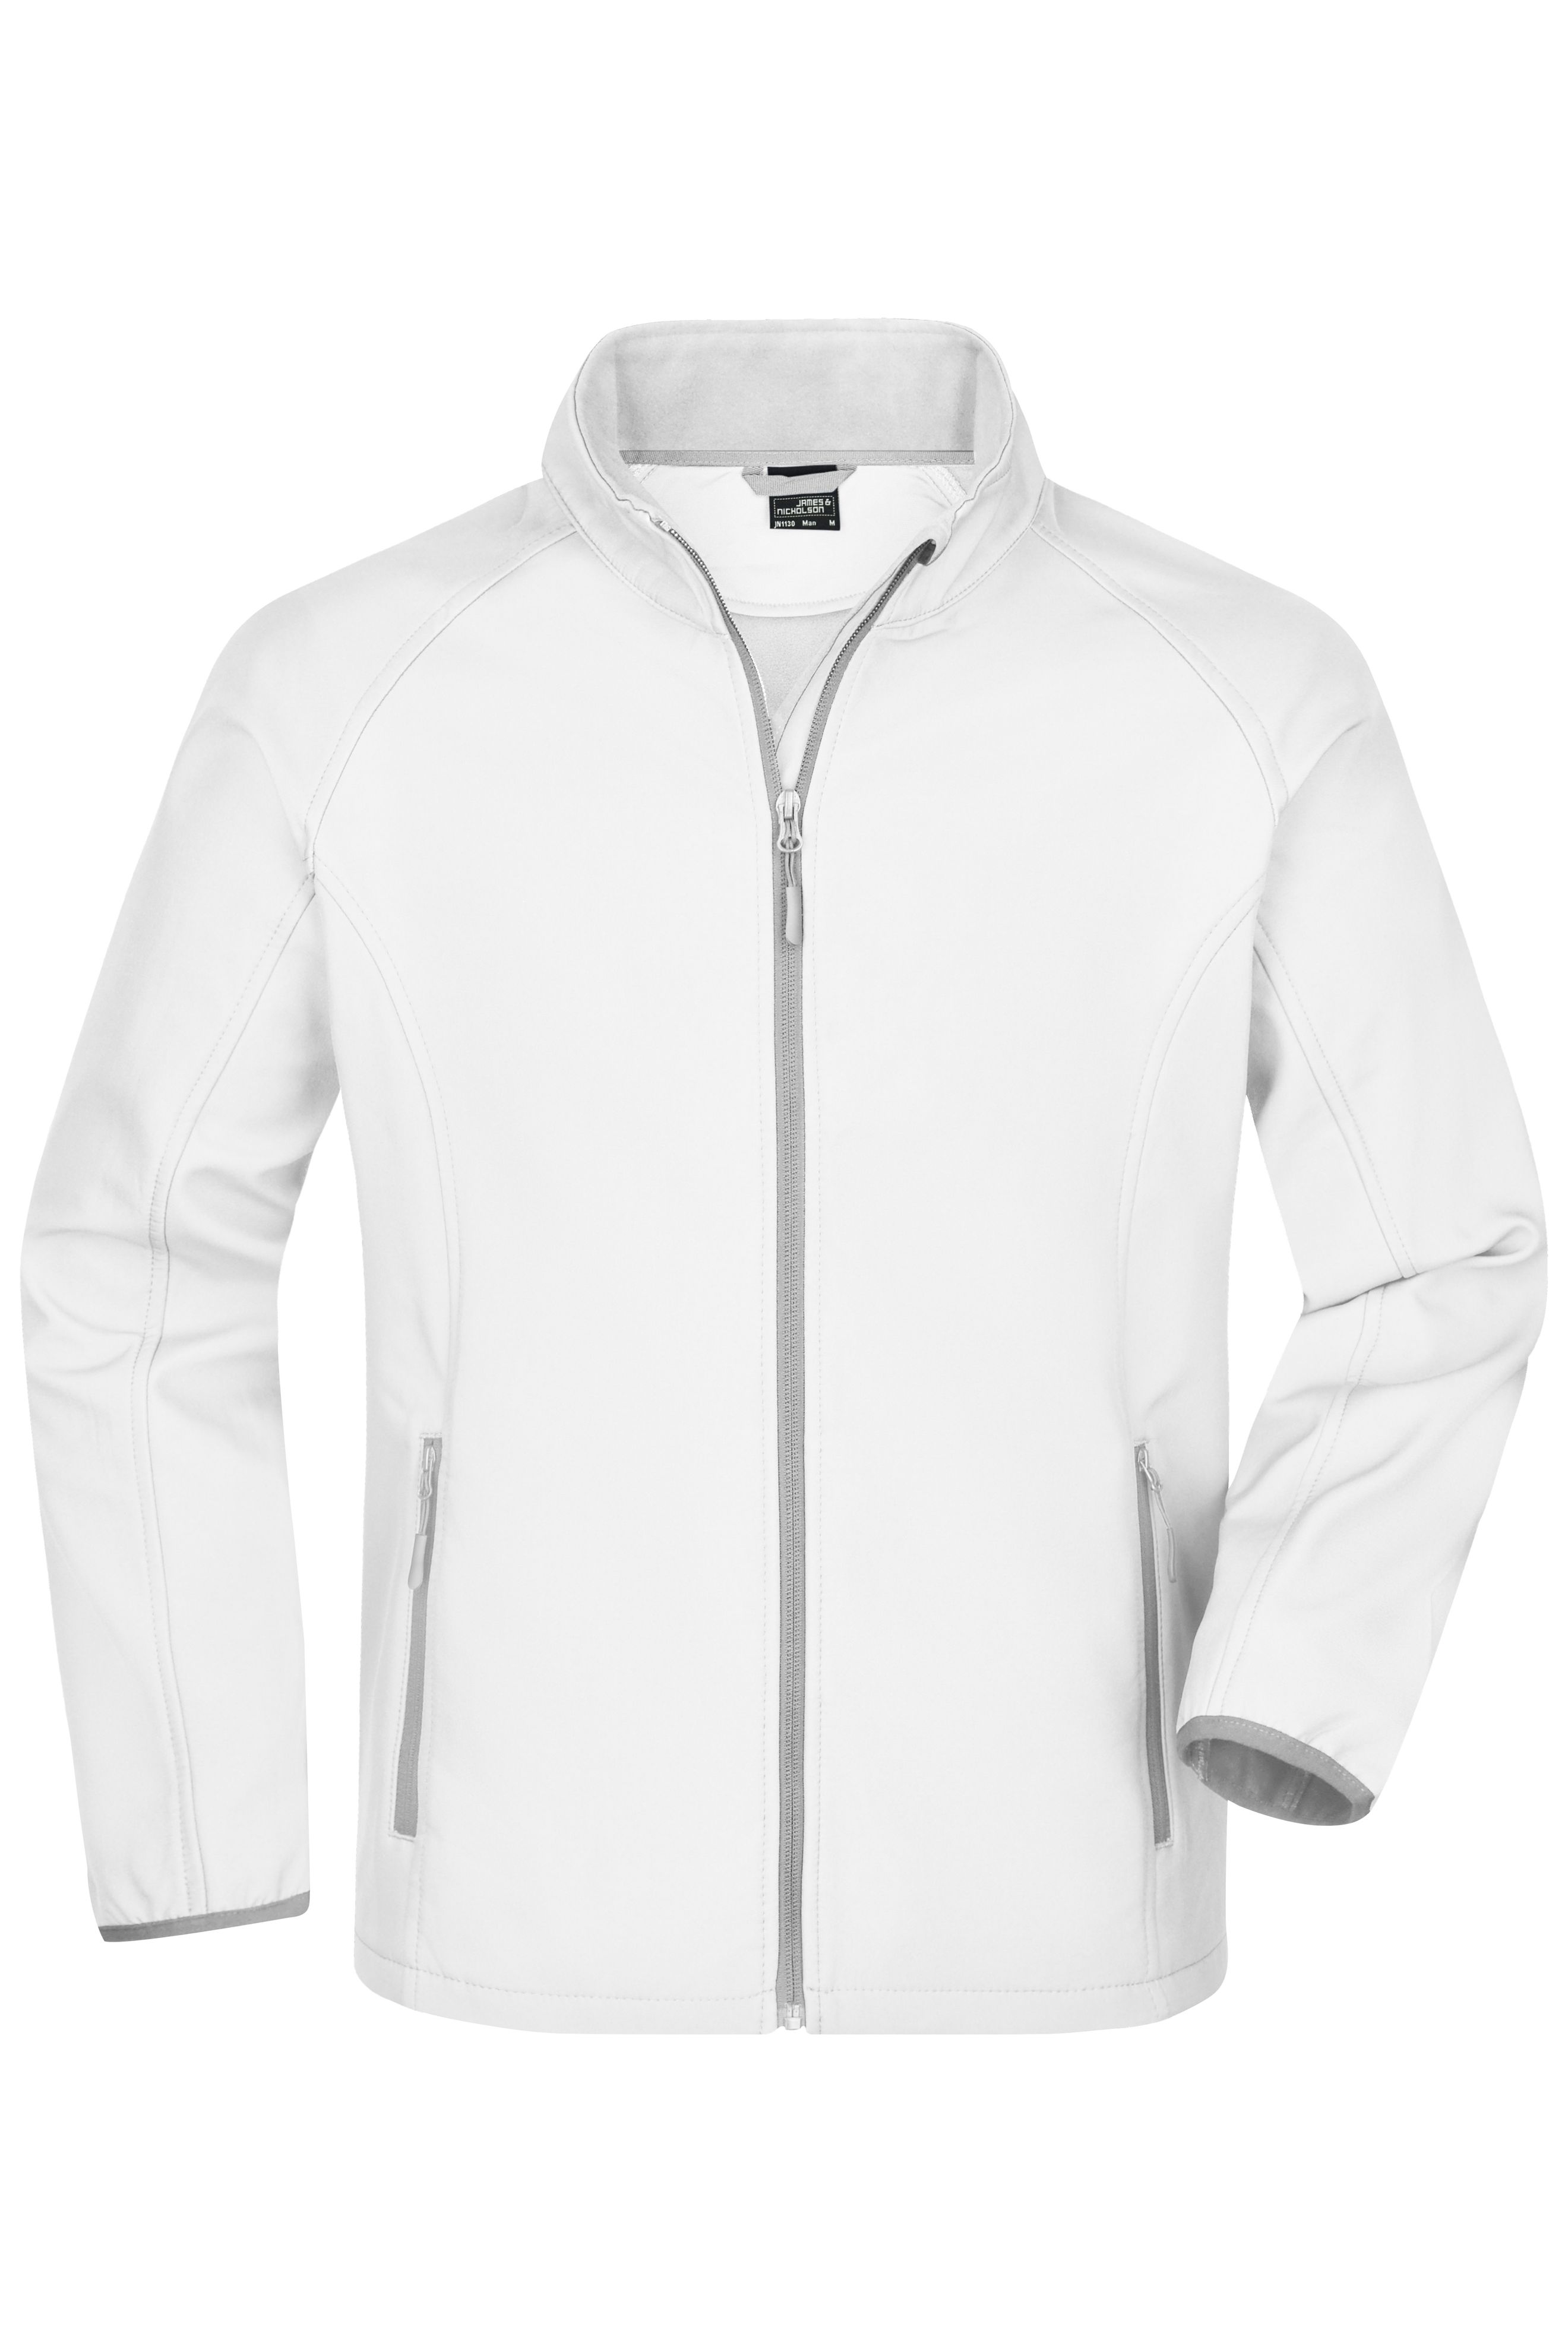 Men's Promo Softshell Jacket JN1130 Softshelljacke für Promotion und Freizeit